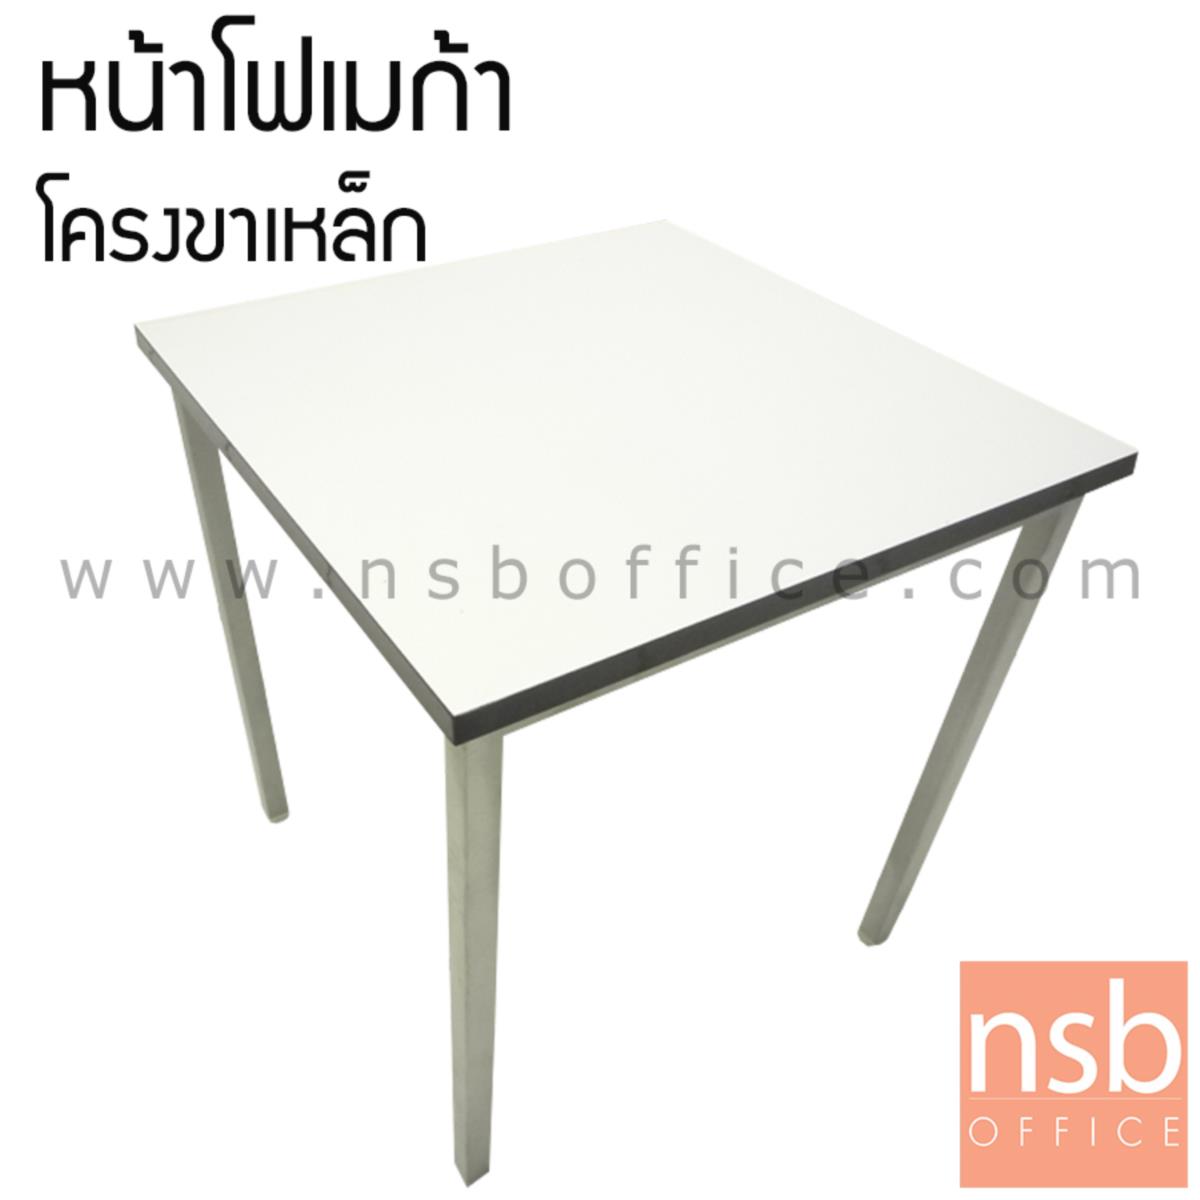 A07A054:โต๊ะประชุมหน้าโฟเมก้าขาว รุ่น Bradlee (แบรดลีย์) ขนาด 75W cm.   ขาเหล็กชุบโครเมียมมีจุกรองยาง